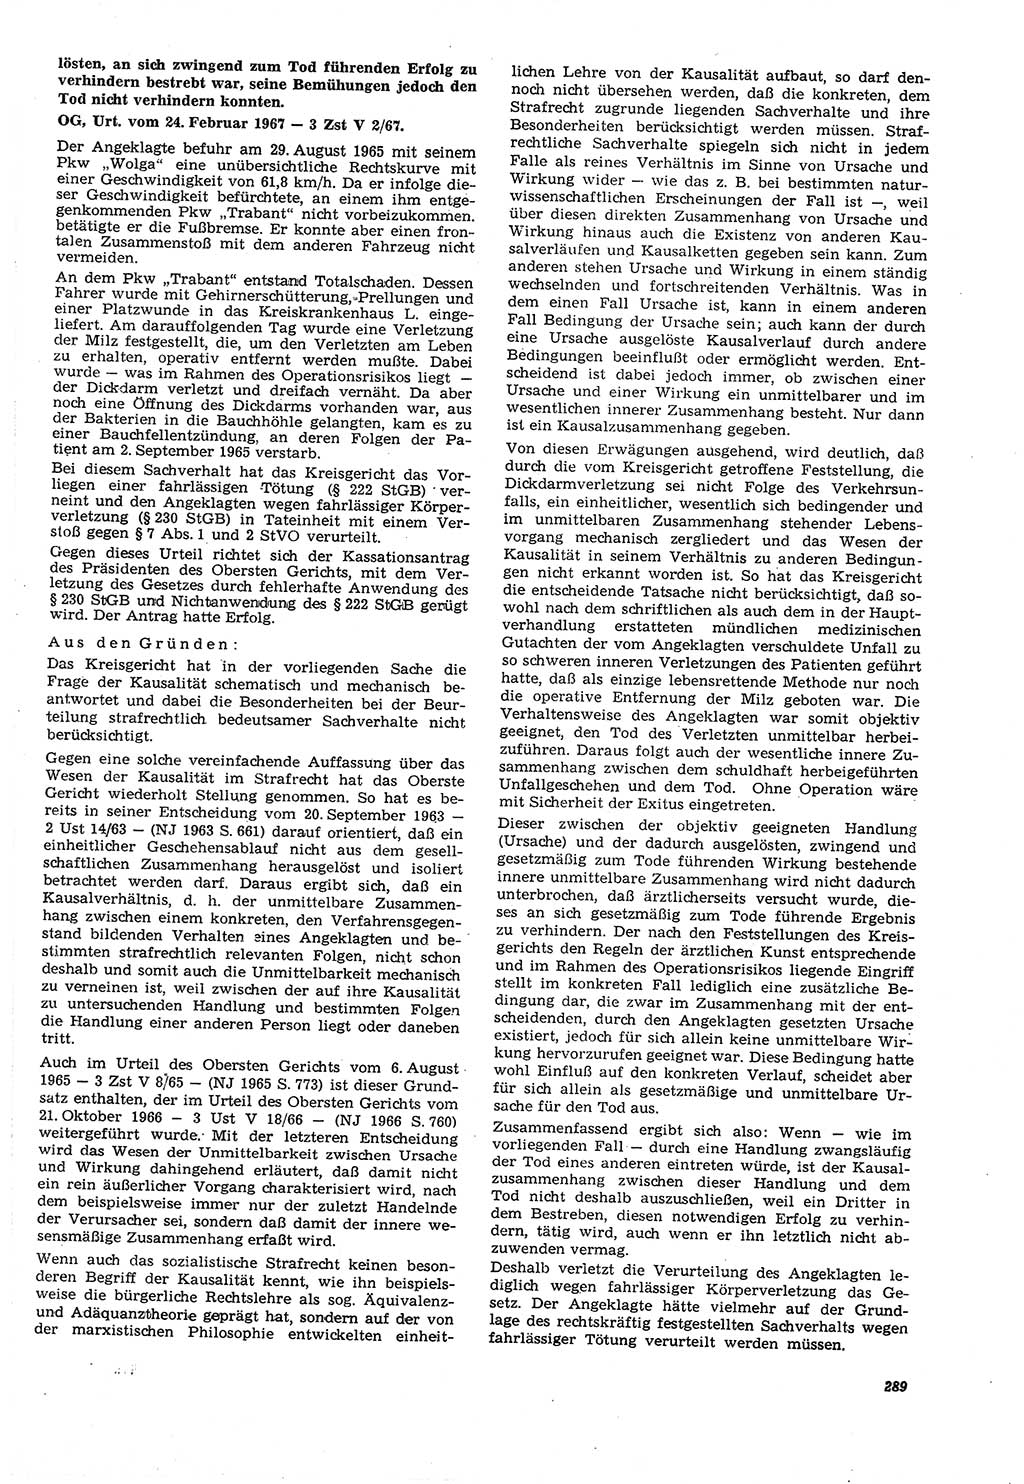 Neue Justiz (NJ), Zeitschrift für Recht und Rechtswissenschaft [Deutsche Demokratische Republik (DDR)], 21. Jahrgang 1967, Seite 289 (NJ DDR 1967, S. 289)